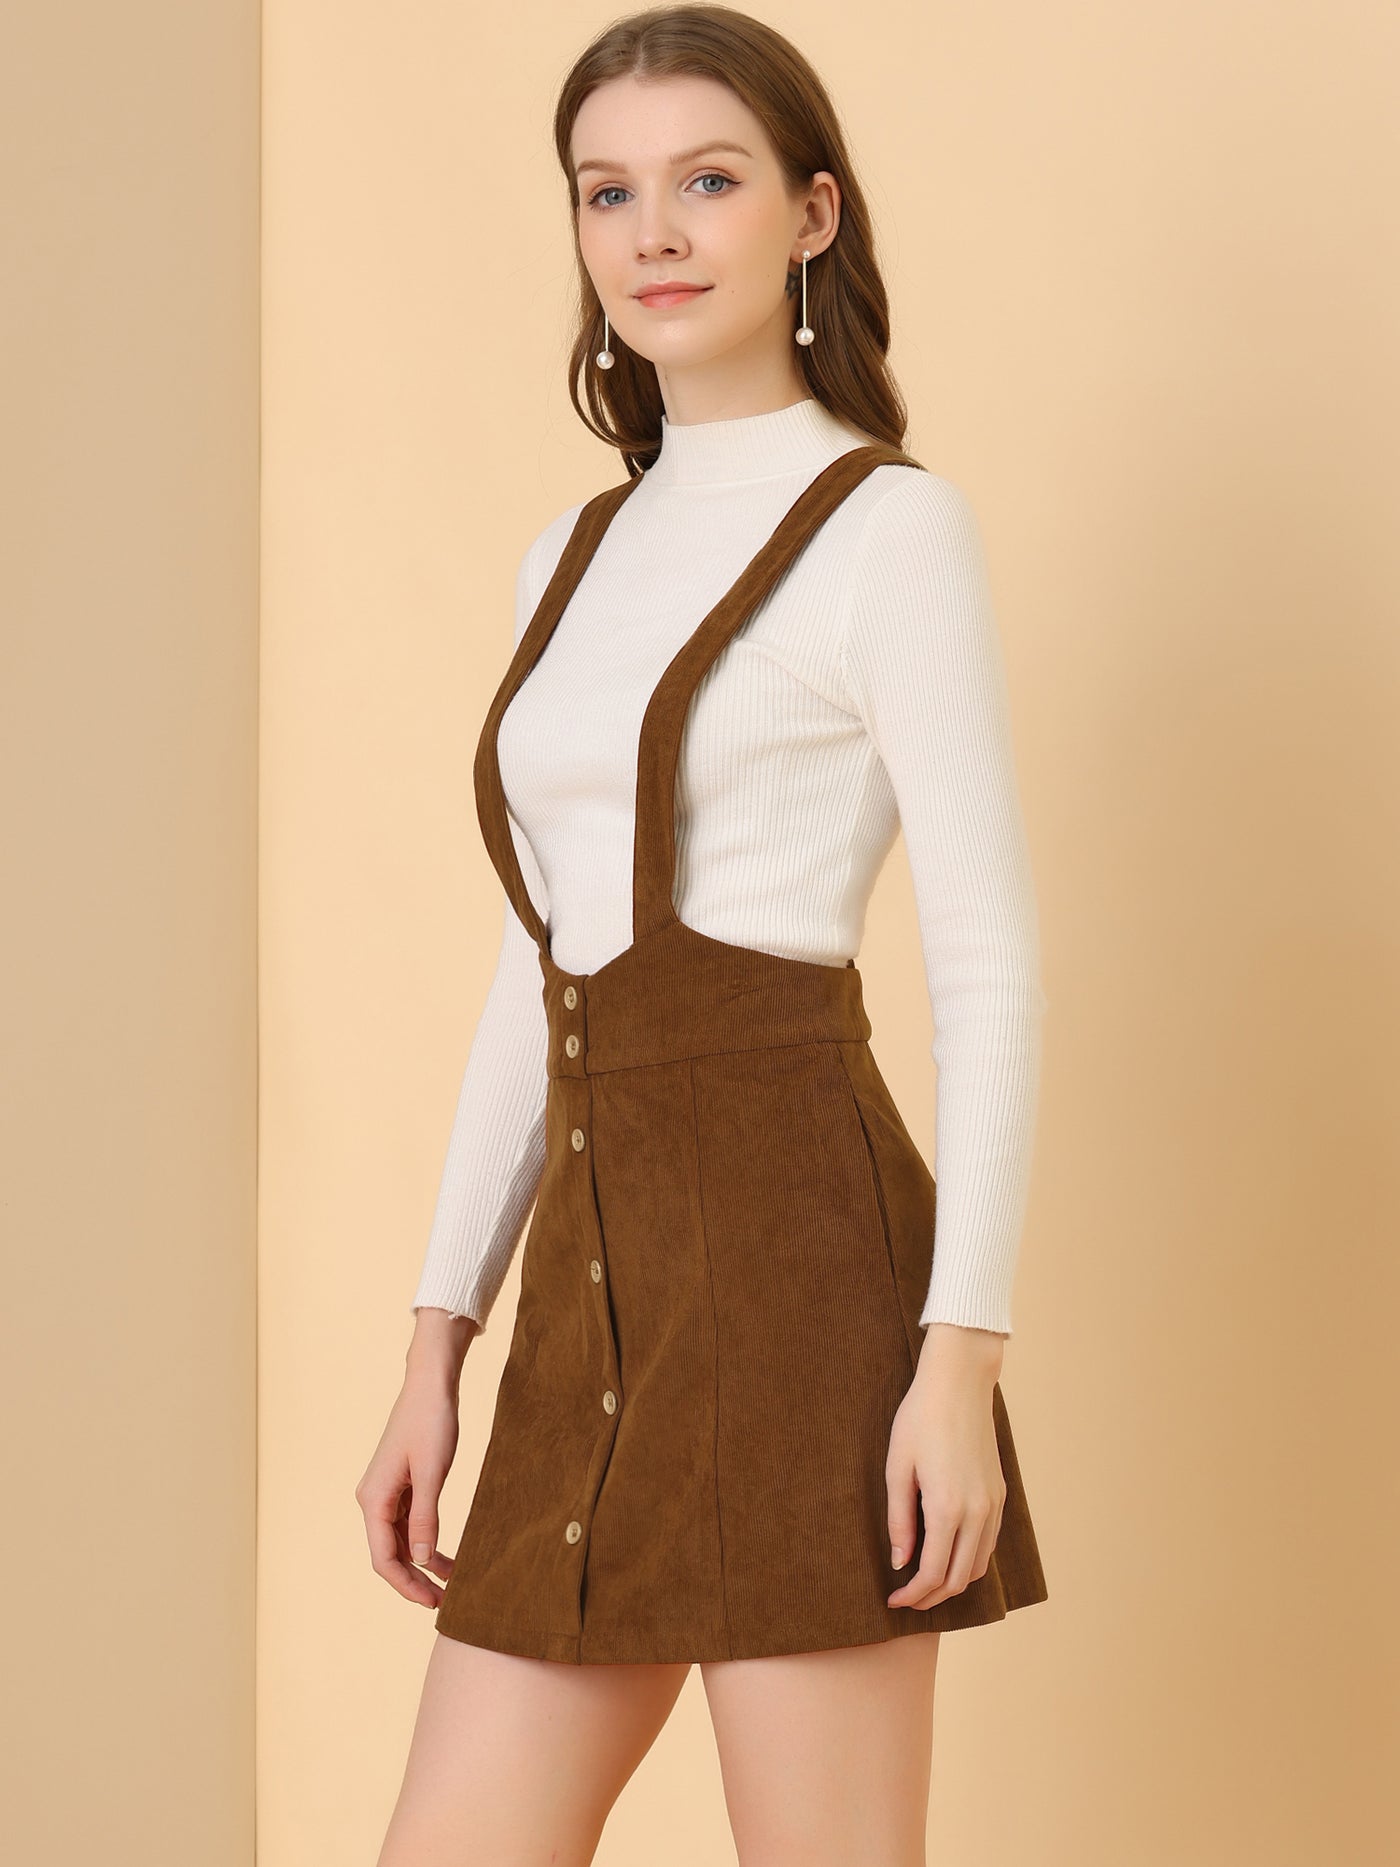 Allegra K Corduroy Overall Strap Braces Button Decor Vintage Suspender Skirt